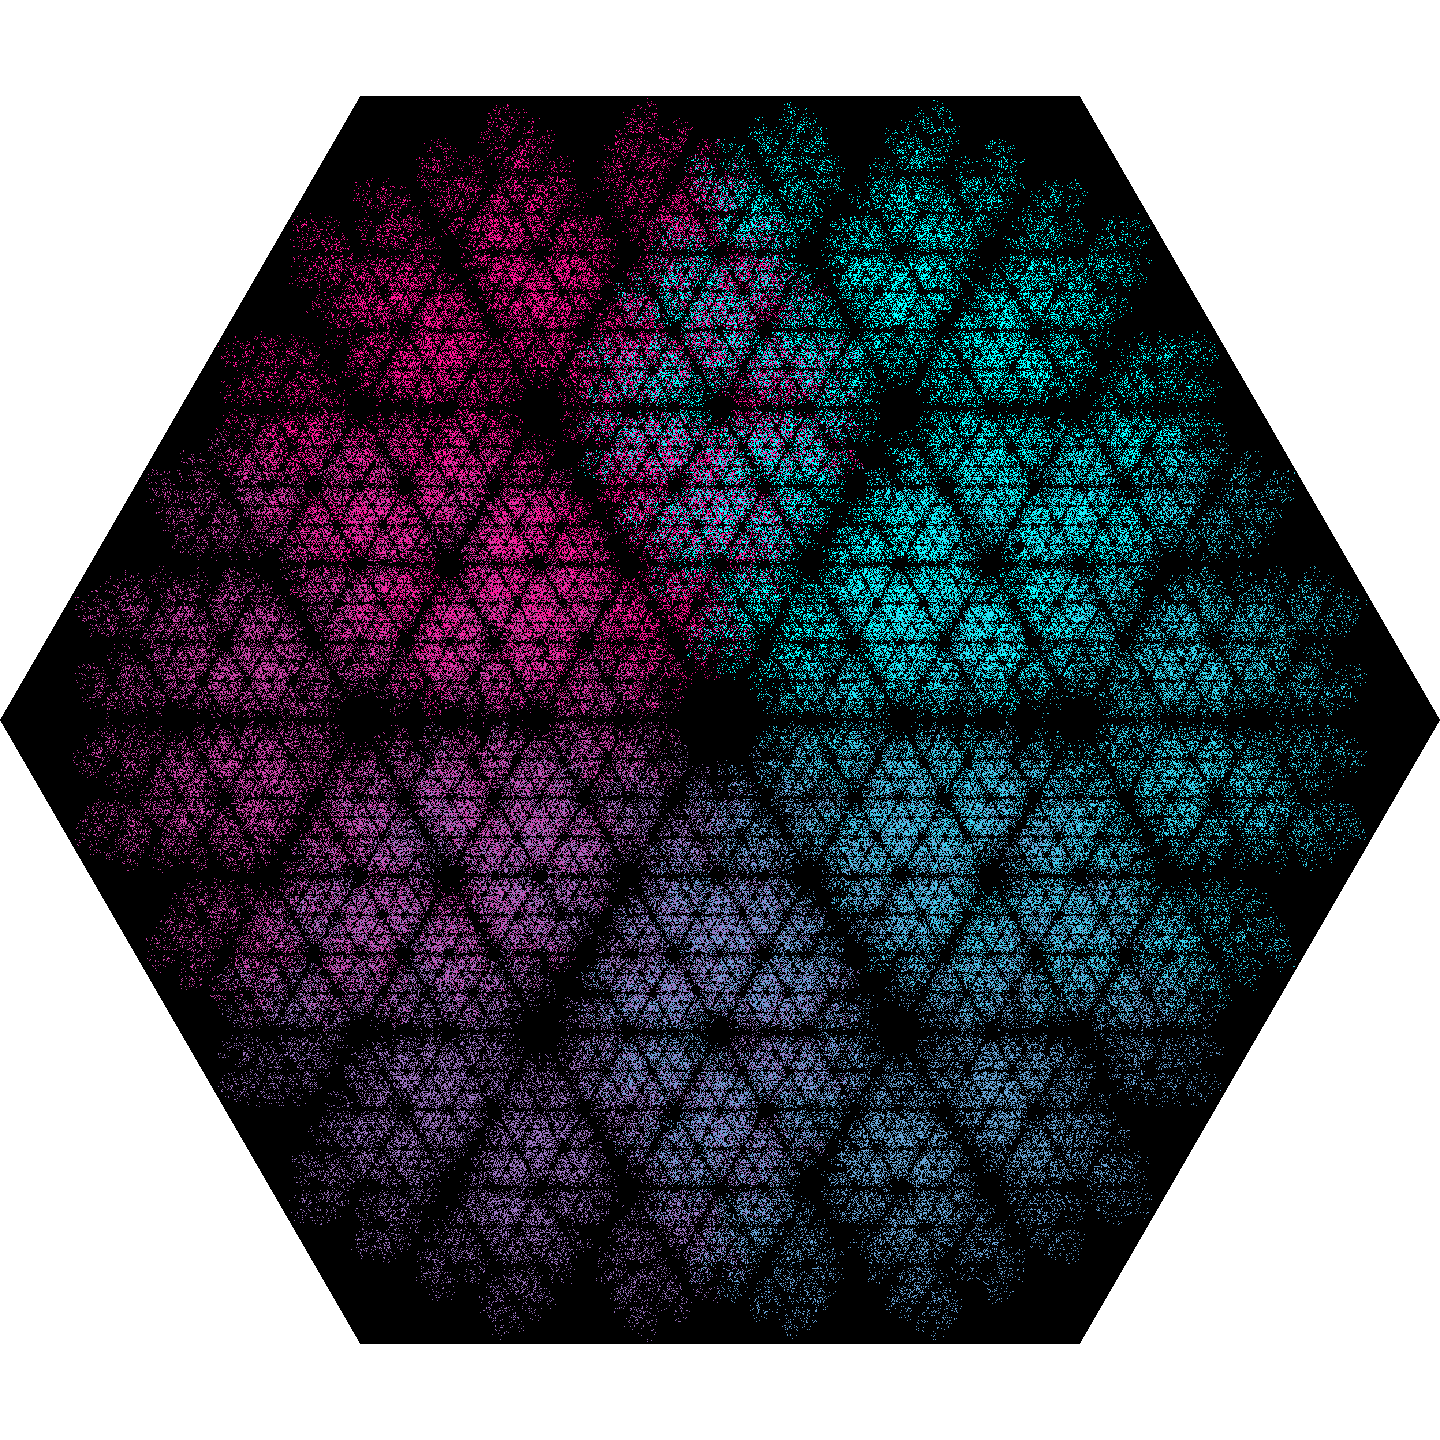 hexagon_norepeat2_0.5.png